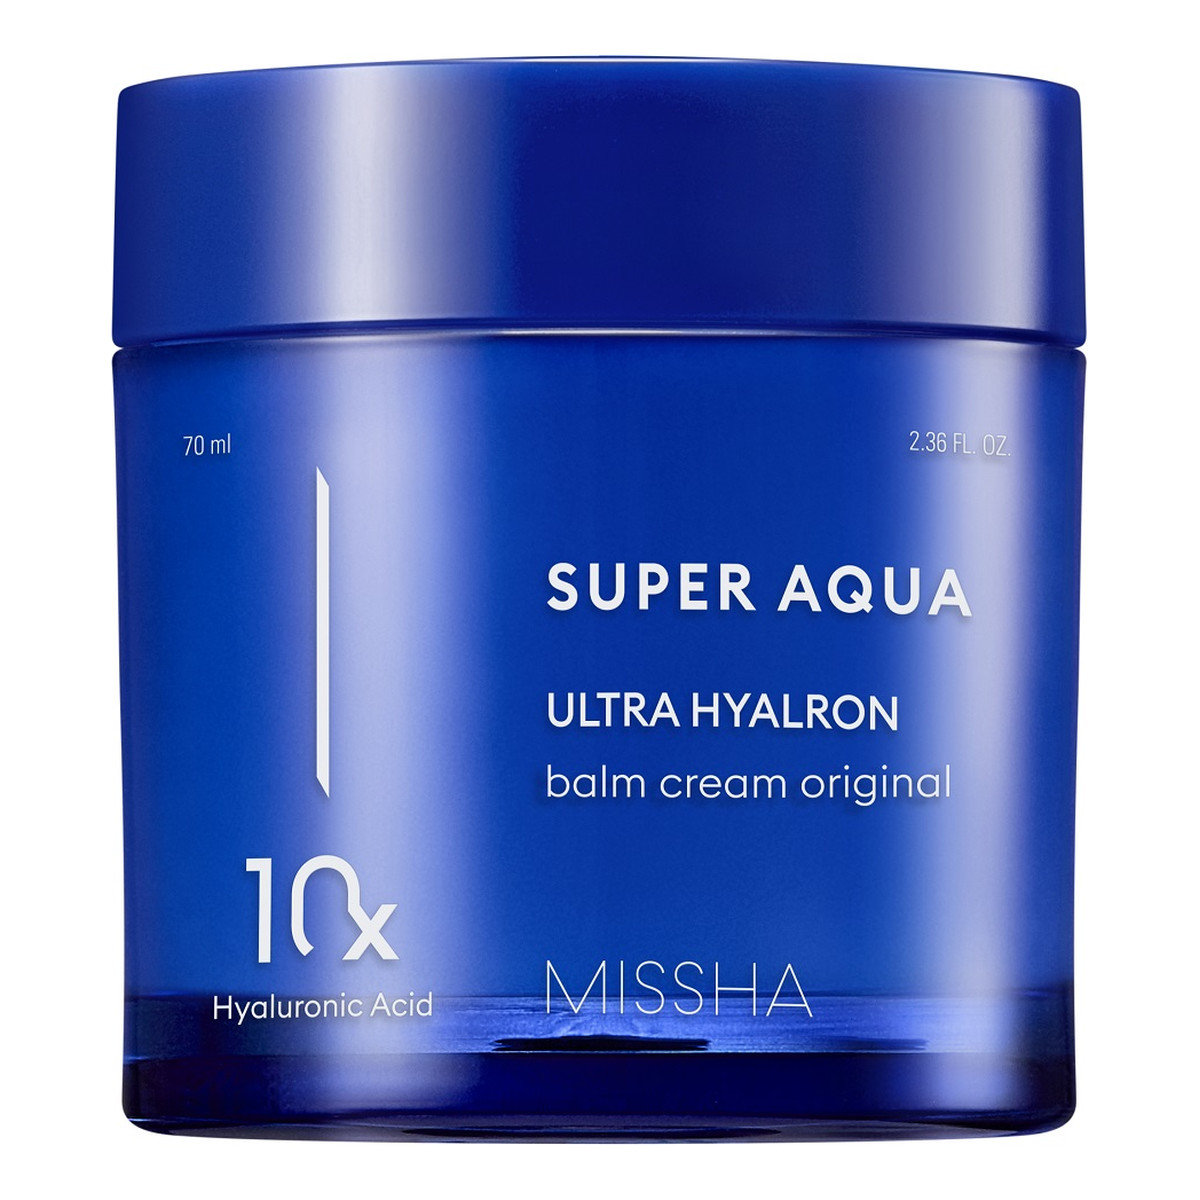 Missha Super Aqua Ultra Hyalron Balm Cream nawilżający Balsam z kompleksem hialuronowym 70ml